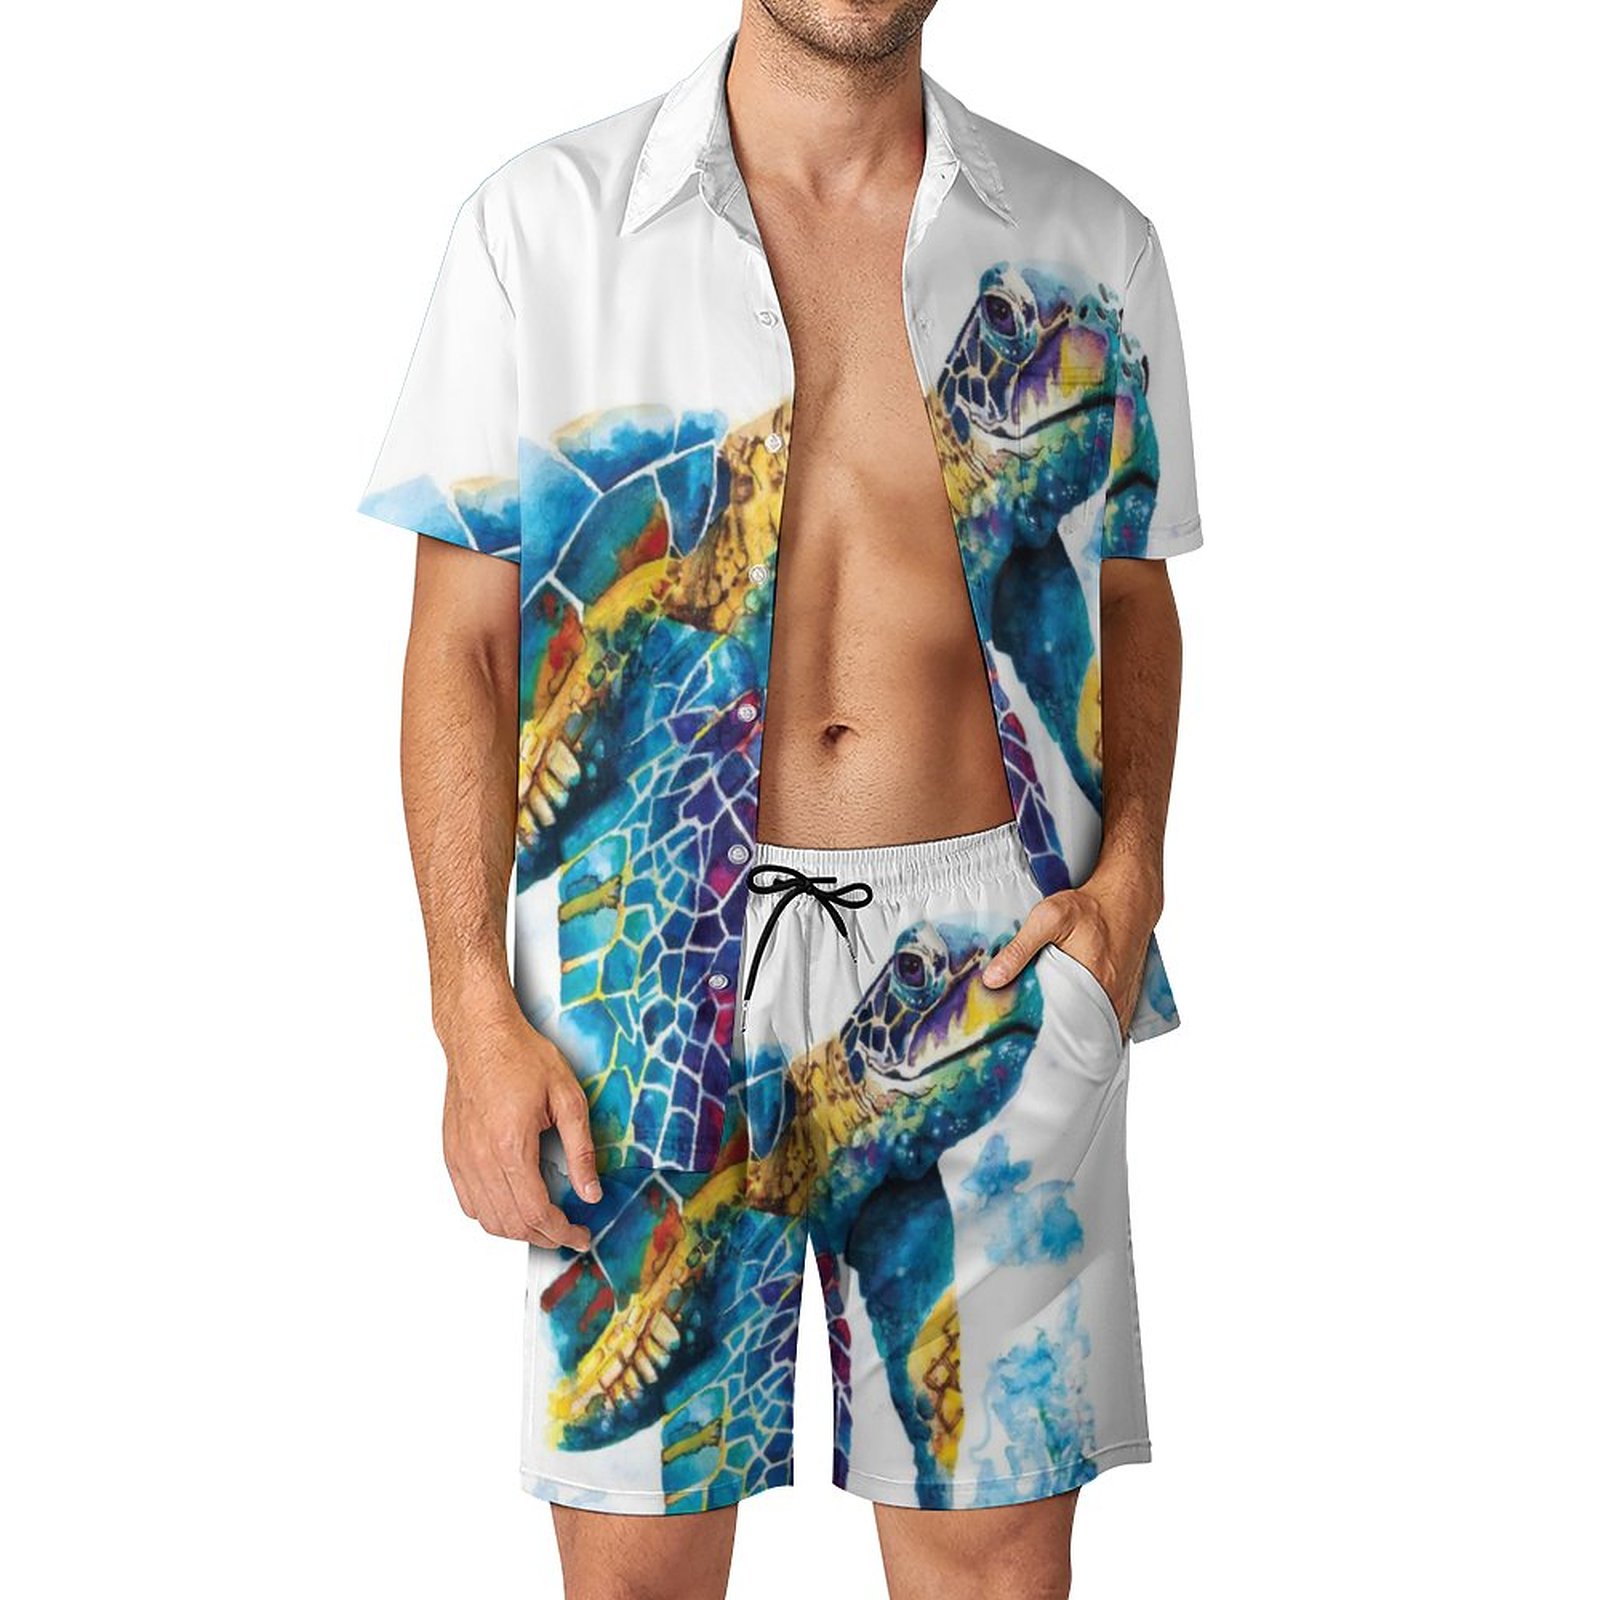 Men's Hawaiian Print Beach Two-Piece Suit